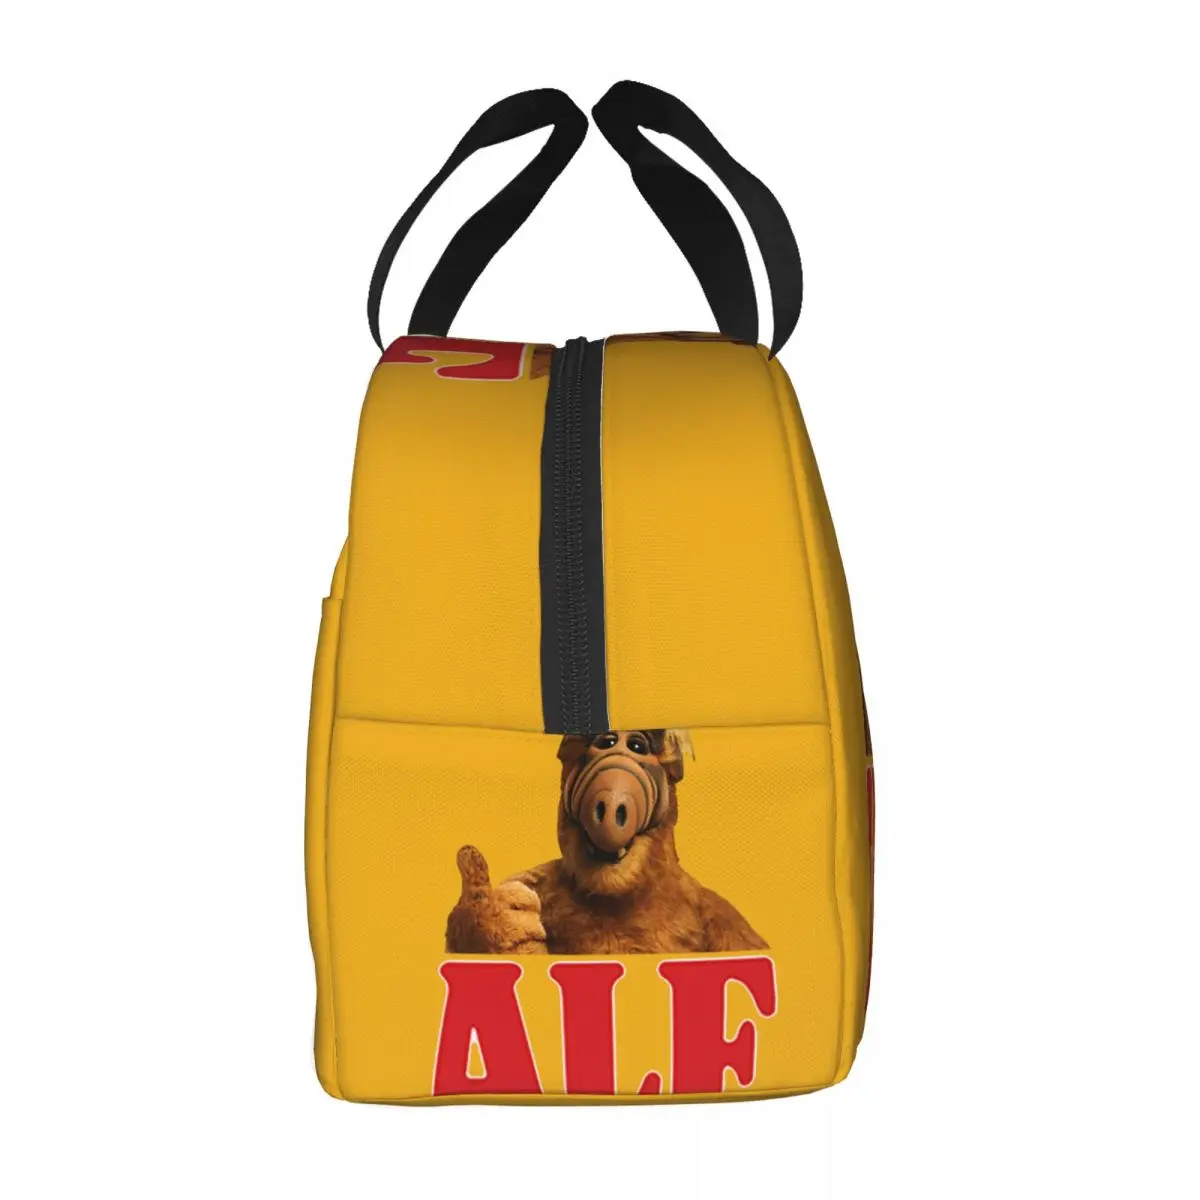 Alf Thumbs Up Lunch Bag Cooler Термоизолированный Ланч-Бокс Инопланетной Формы Жизни для Женщин, Детей, Школьной Работы, Пикника, Еды, Сумки-Тоут Изображение 1